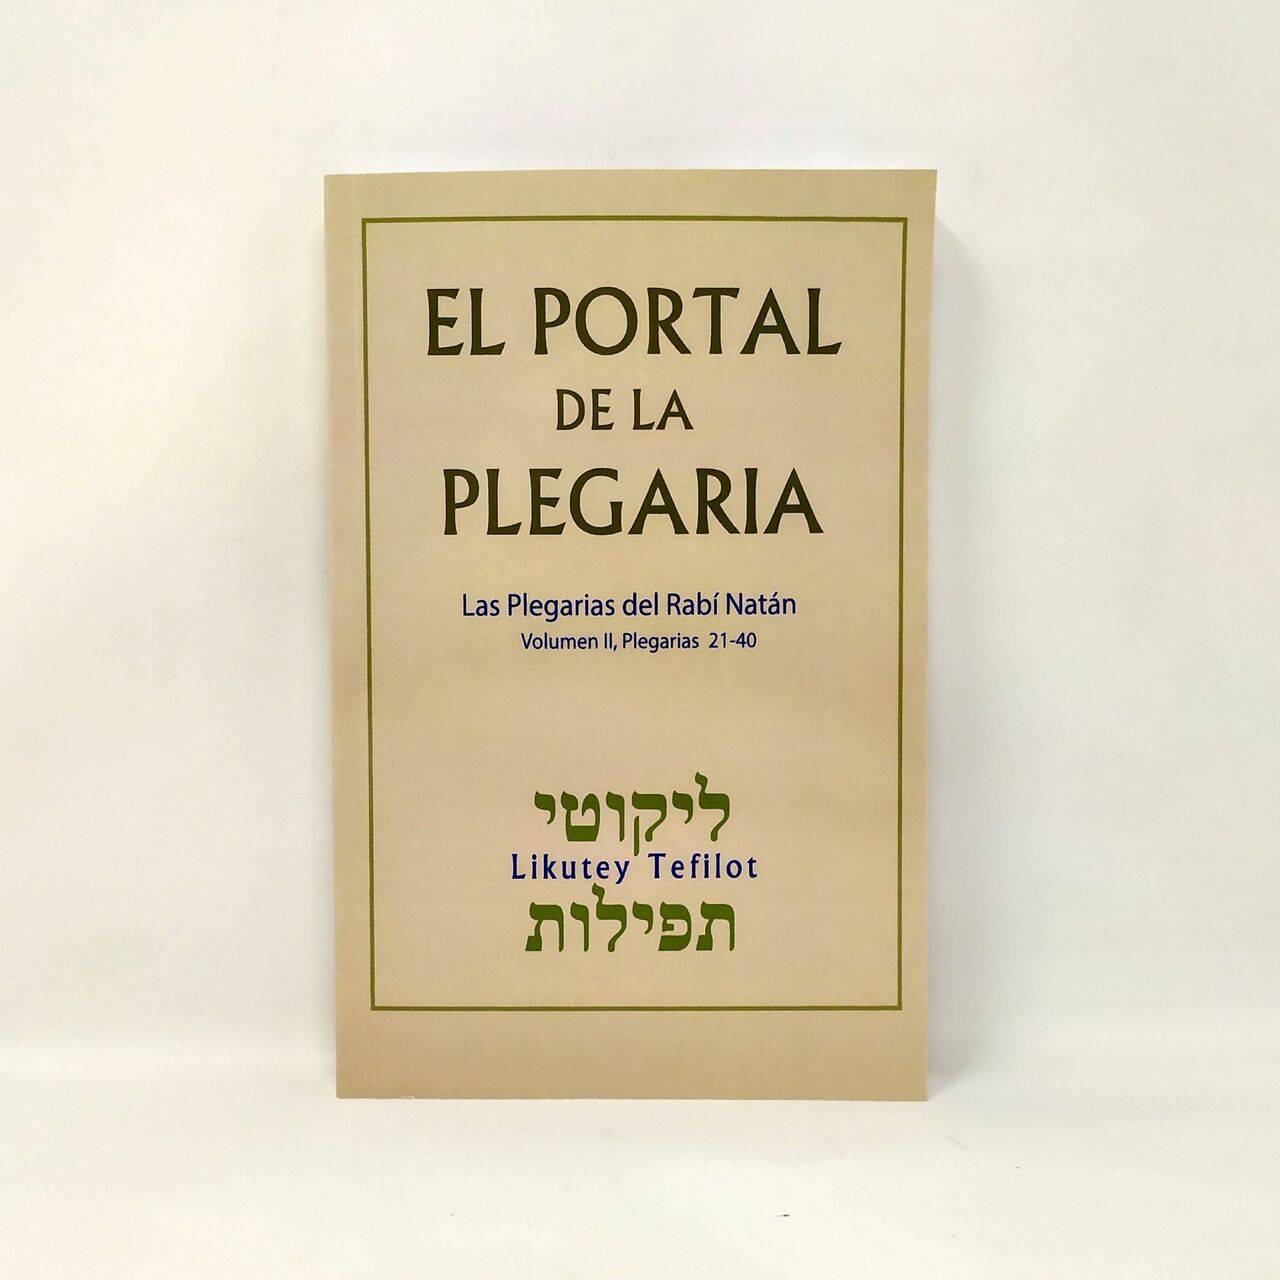 El portal de la plegaria vol. II, del 21-40 - Libreria Jerusalem Centro